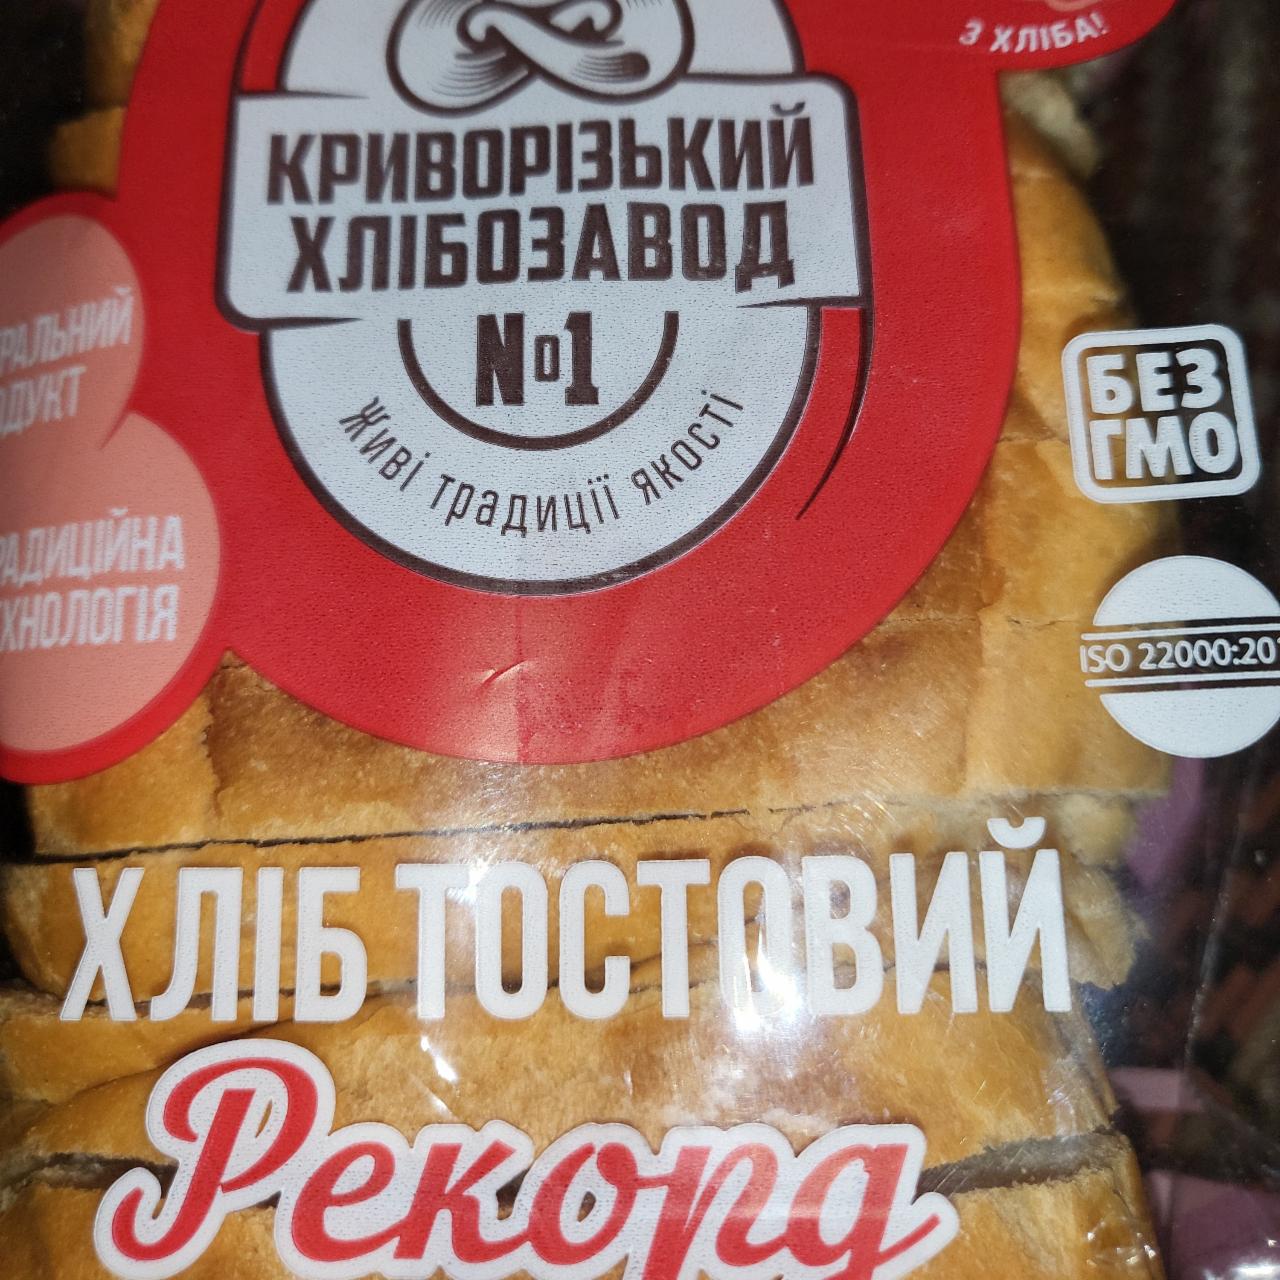 Фото - Хлеб тостовый Рекорд Криворожский хлебозавод №1